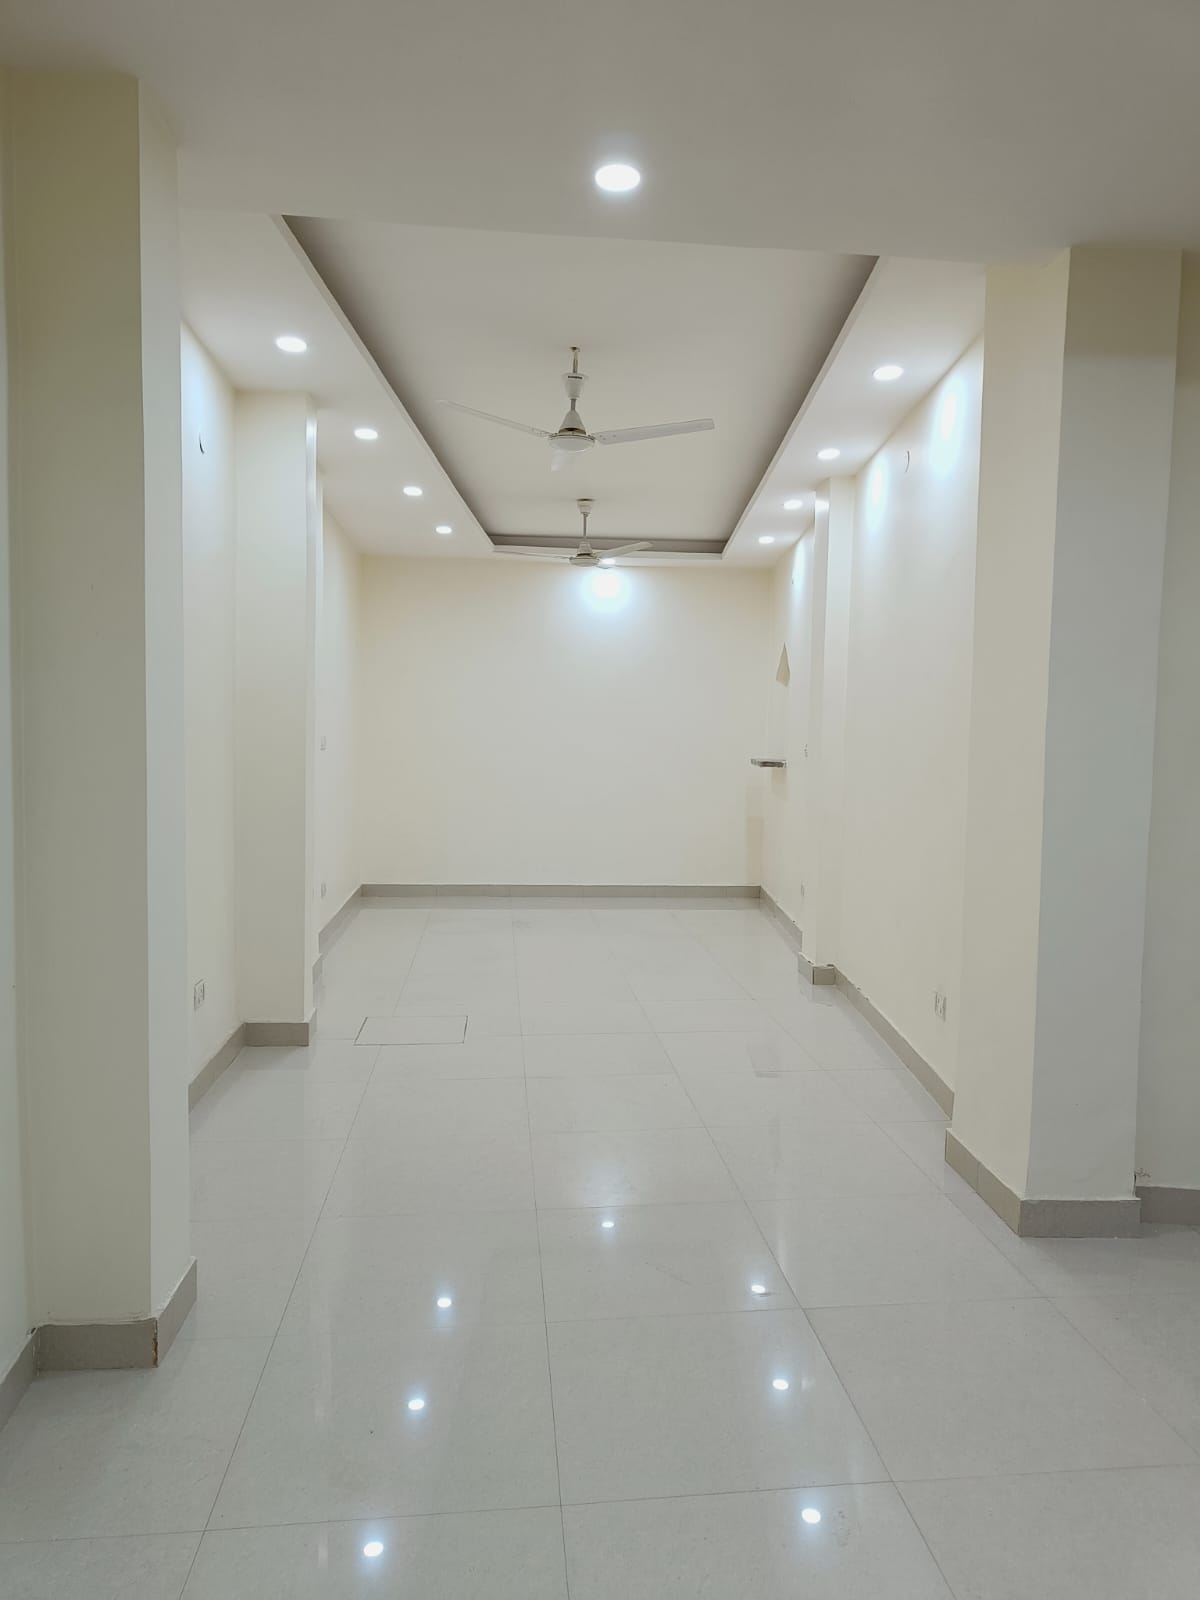 Premium Property on Rent in Safdarjung Enclave, DelhiReal EstateOffice-Commercial For Rent LeaseSouth DelhiSafdarjung